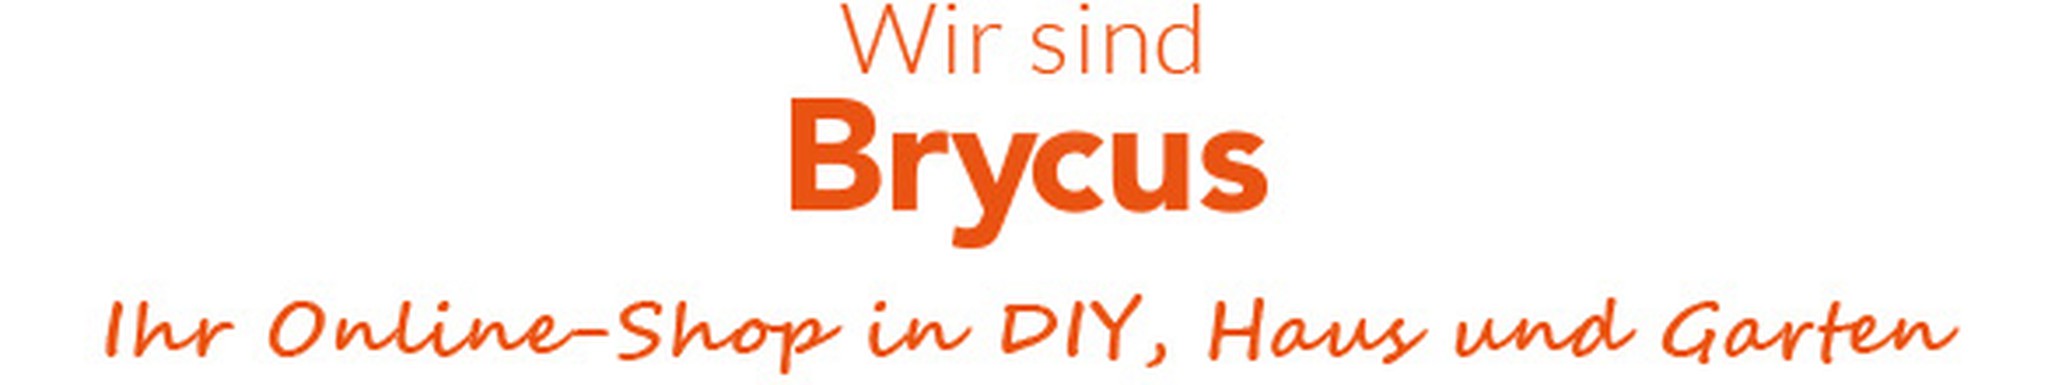 Wir sind Brycus, Ihr DIY-, Haus- und Garten -Online -Shop